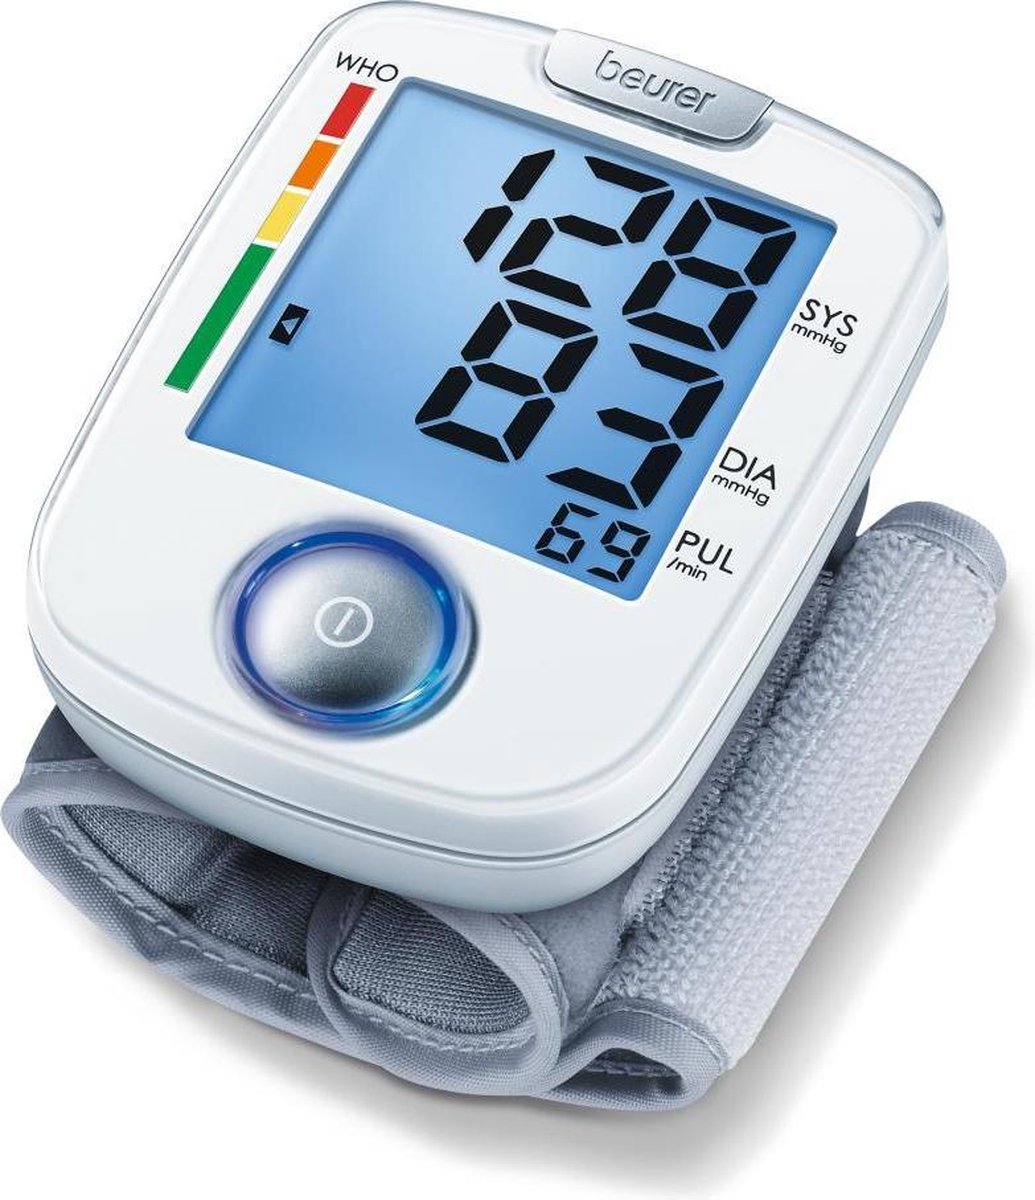 Beurer BC 44 Bloeddrukmeter pols - Hartslagmeter – XL display – 1 Knop bediening - Onregelmatige hartslag – Risico-indicator - Manchet pols 14-19,5 cm - Incl. batterijen en opbergtas - 5 Jaar garantie - Beurer